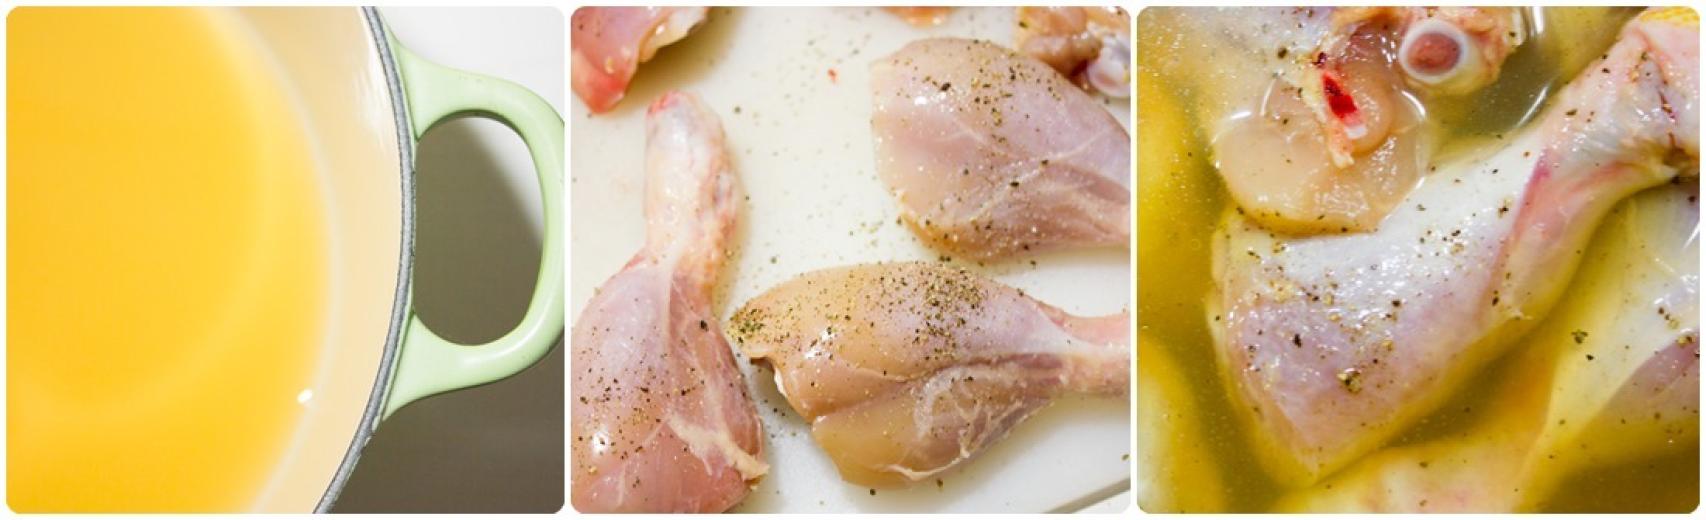 Pollo asado sin grasa, receta paso a paso